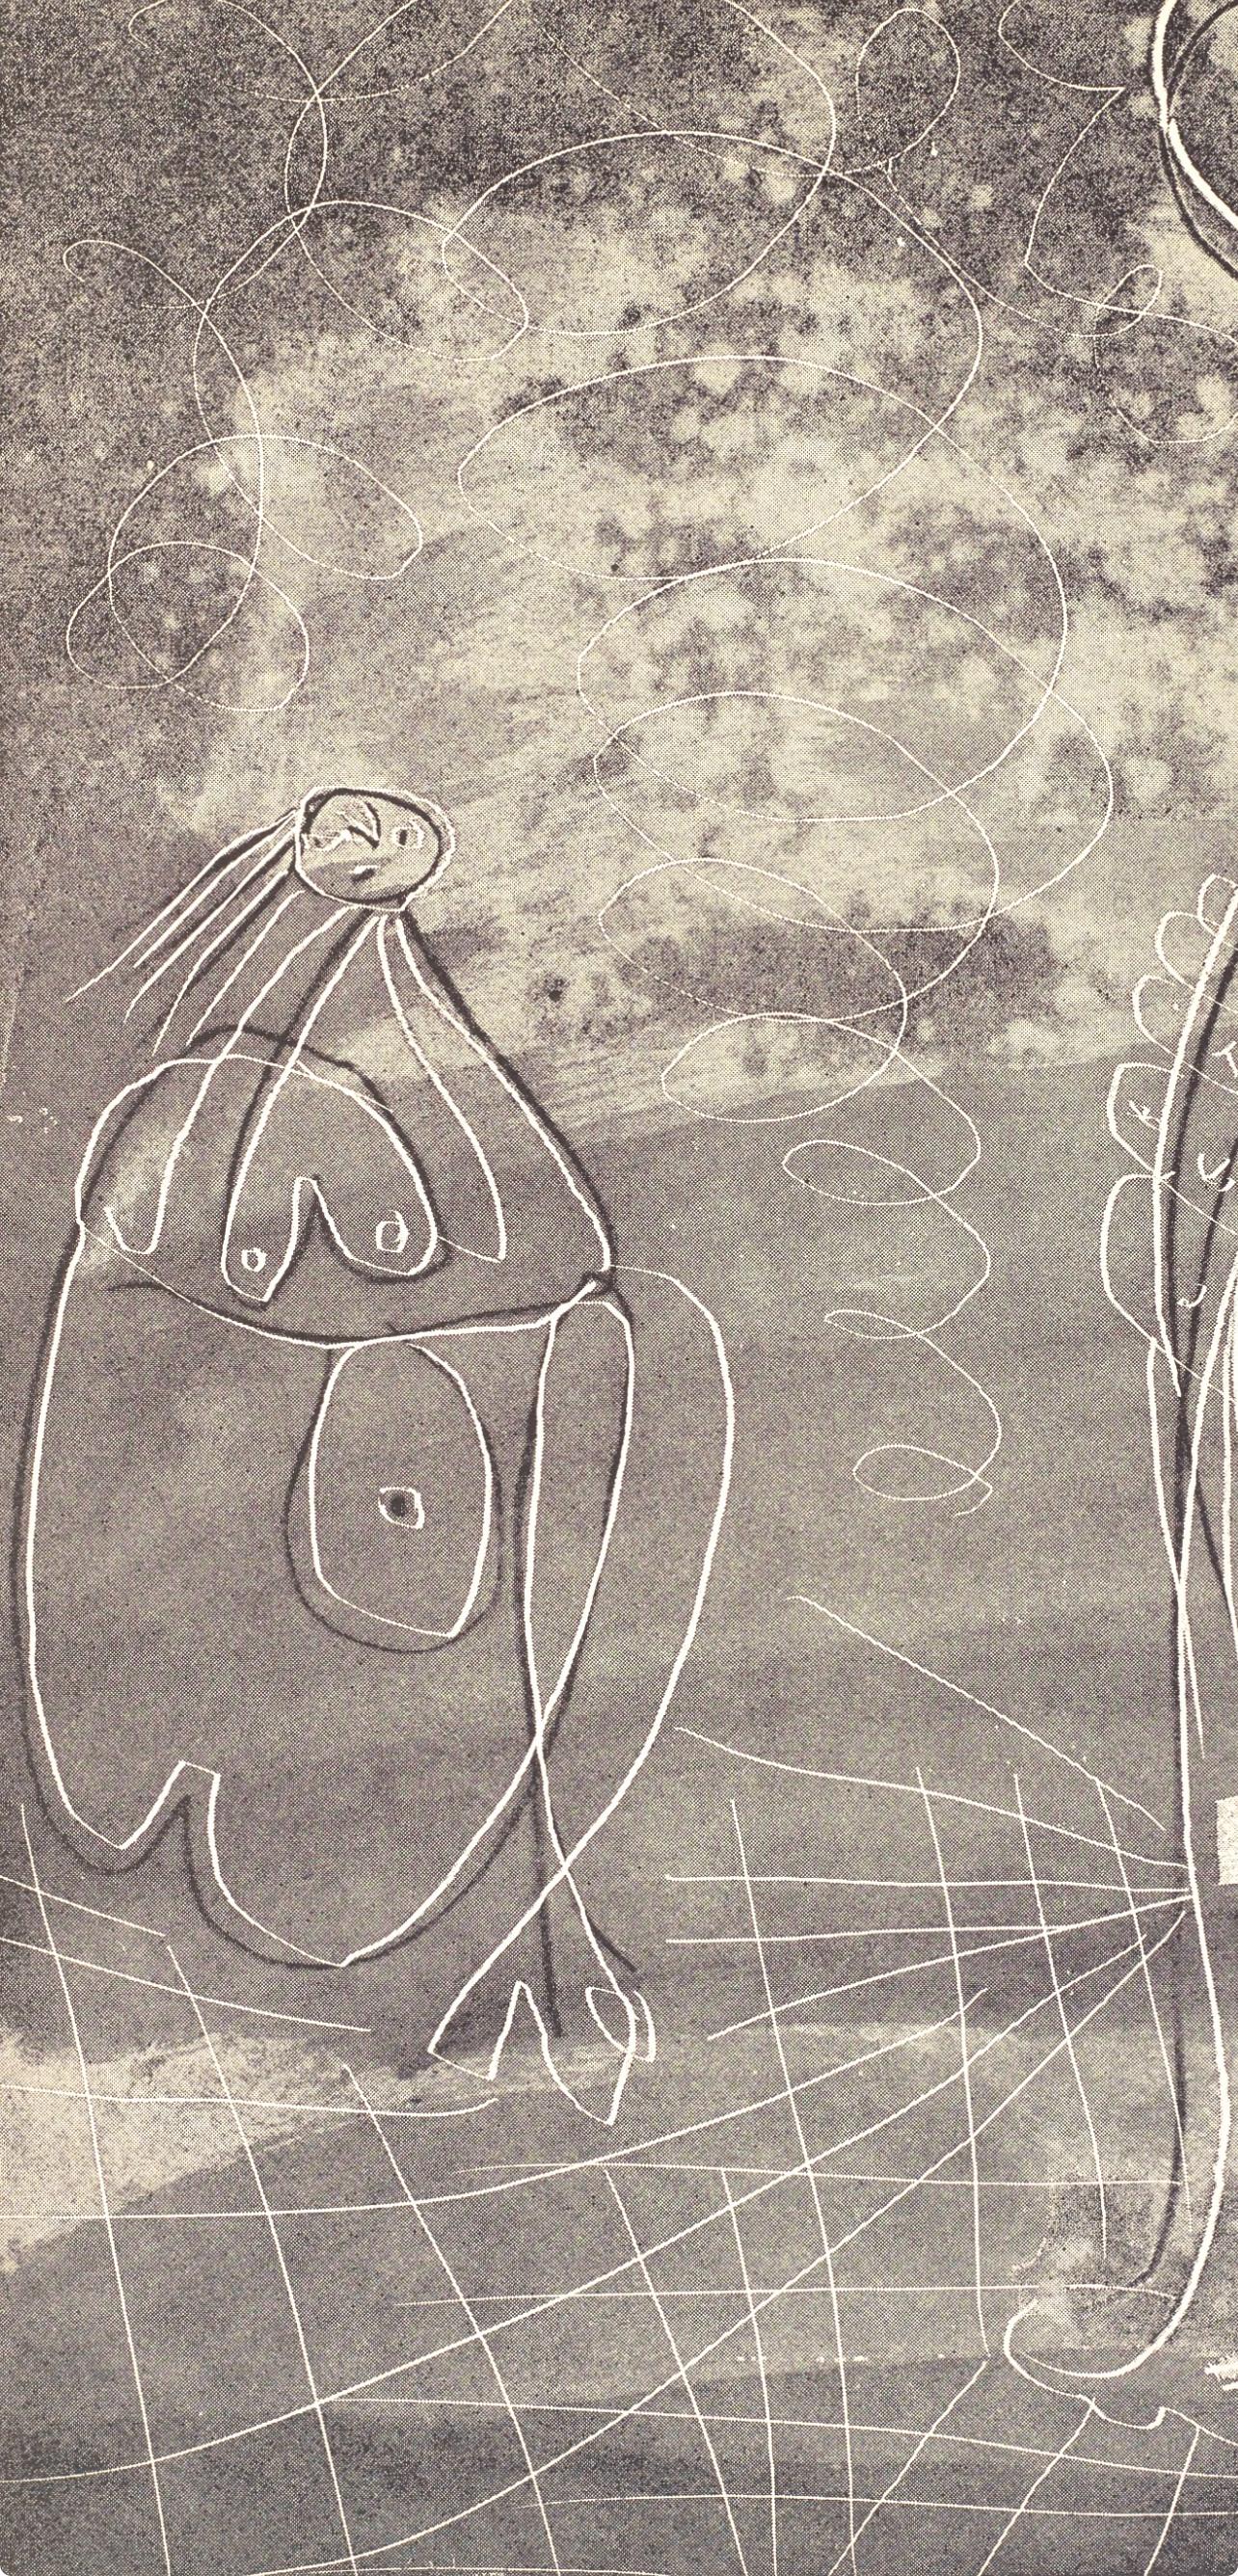 Picasso, Composition, La Chèvre-Feuille (after) - Print by Pablo Picasso